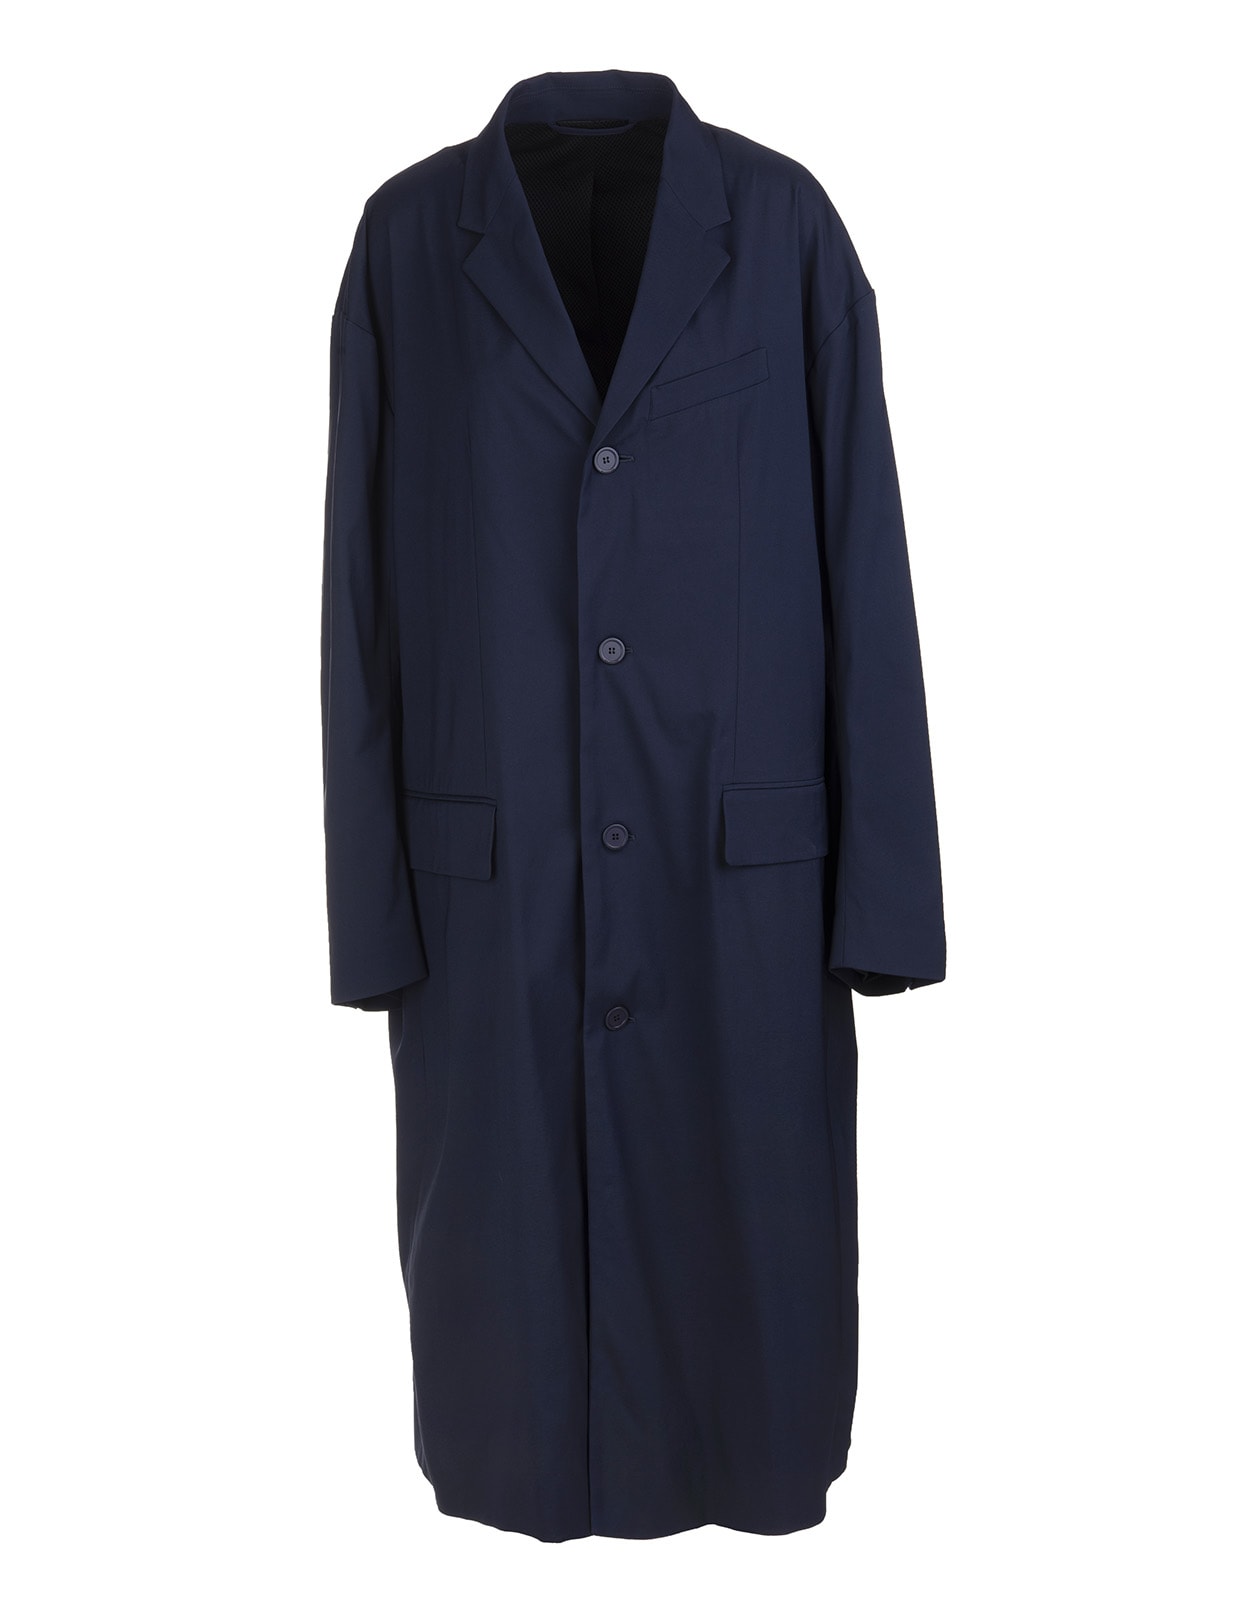 Balenciaga Woman Navy Blue Single Breasted Overcoat